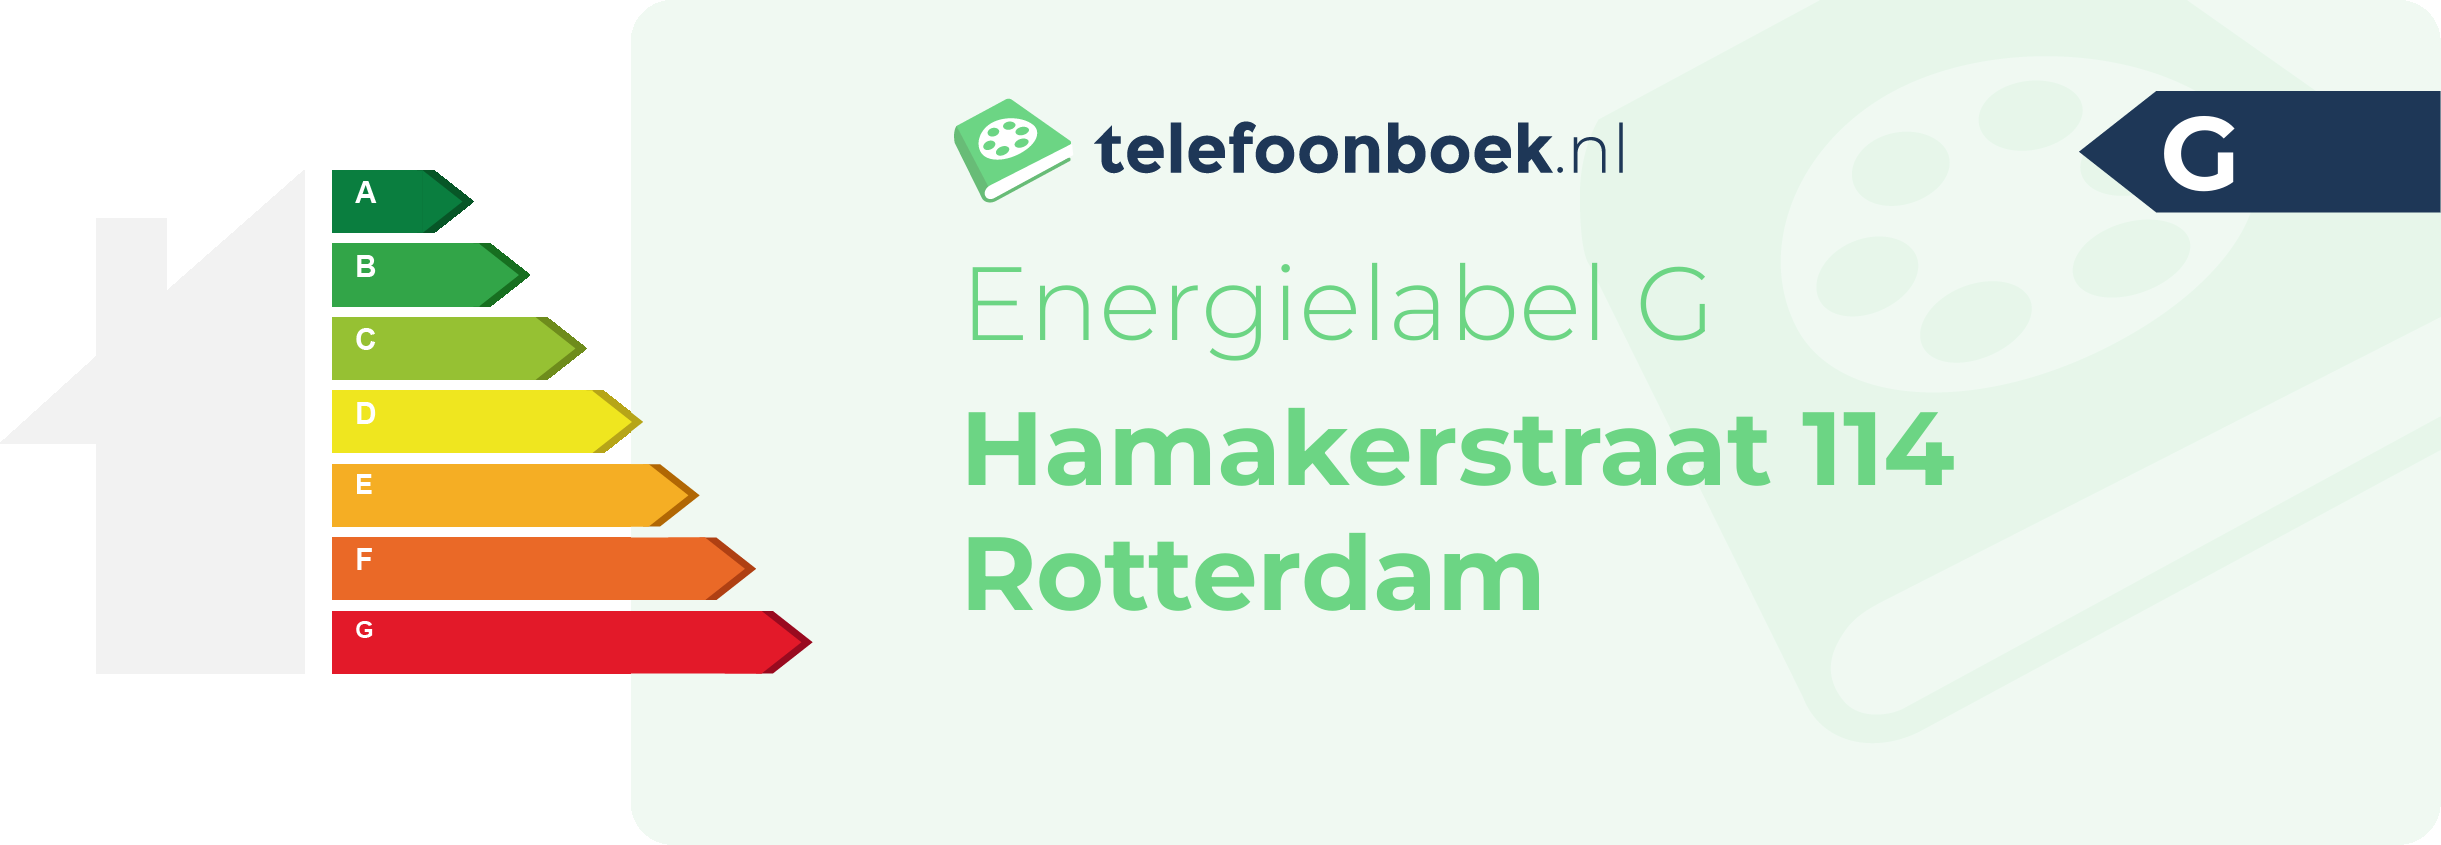 Energielabel Hamakerstraat 114 Rotterdam